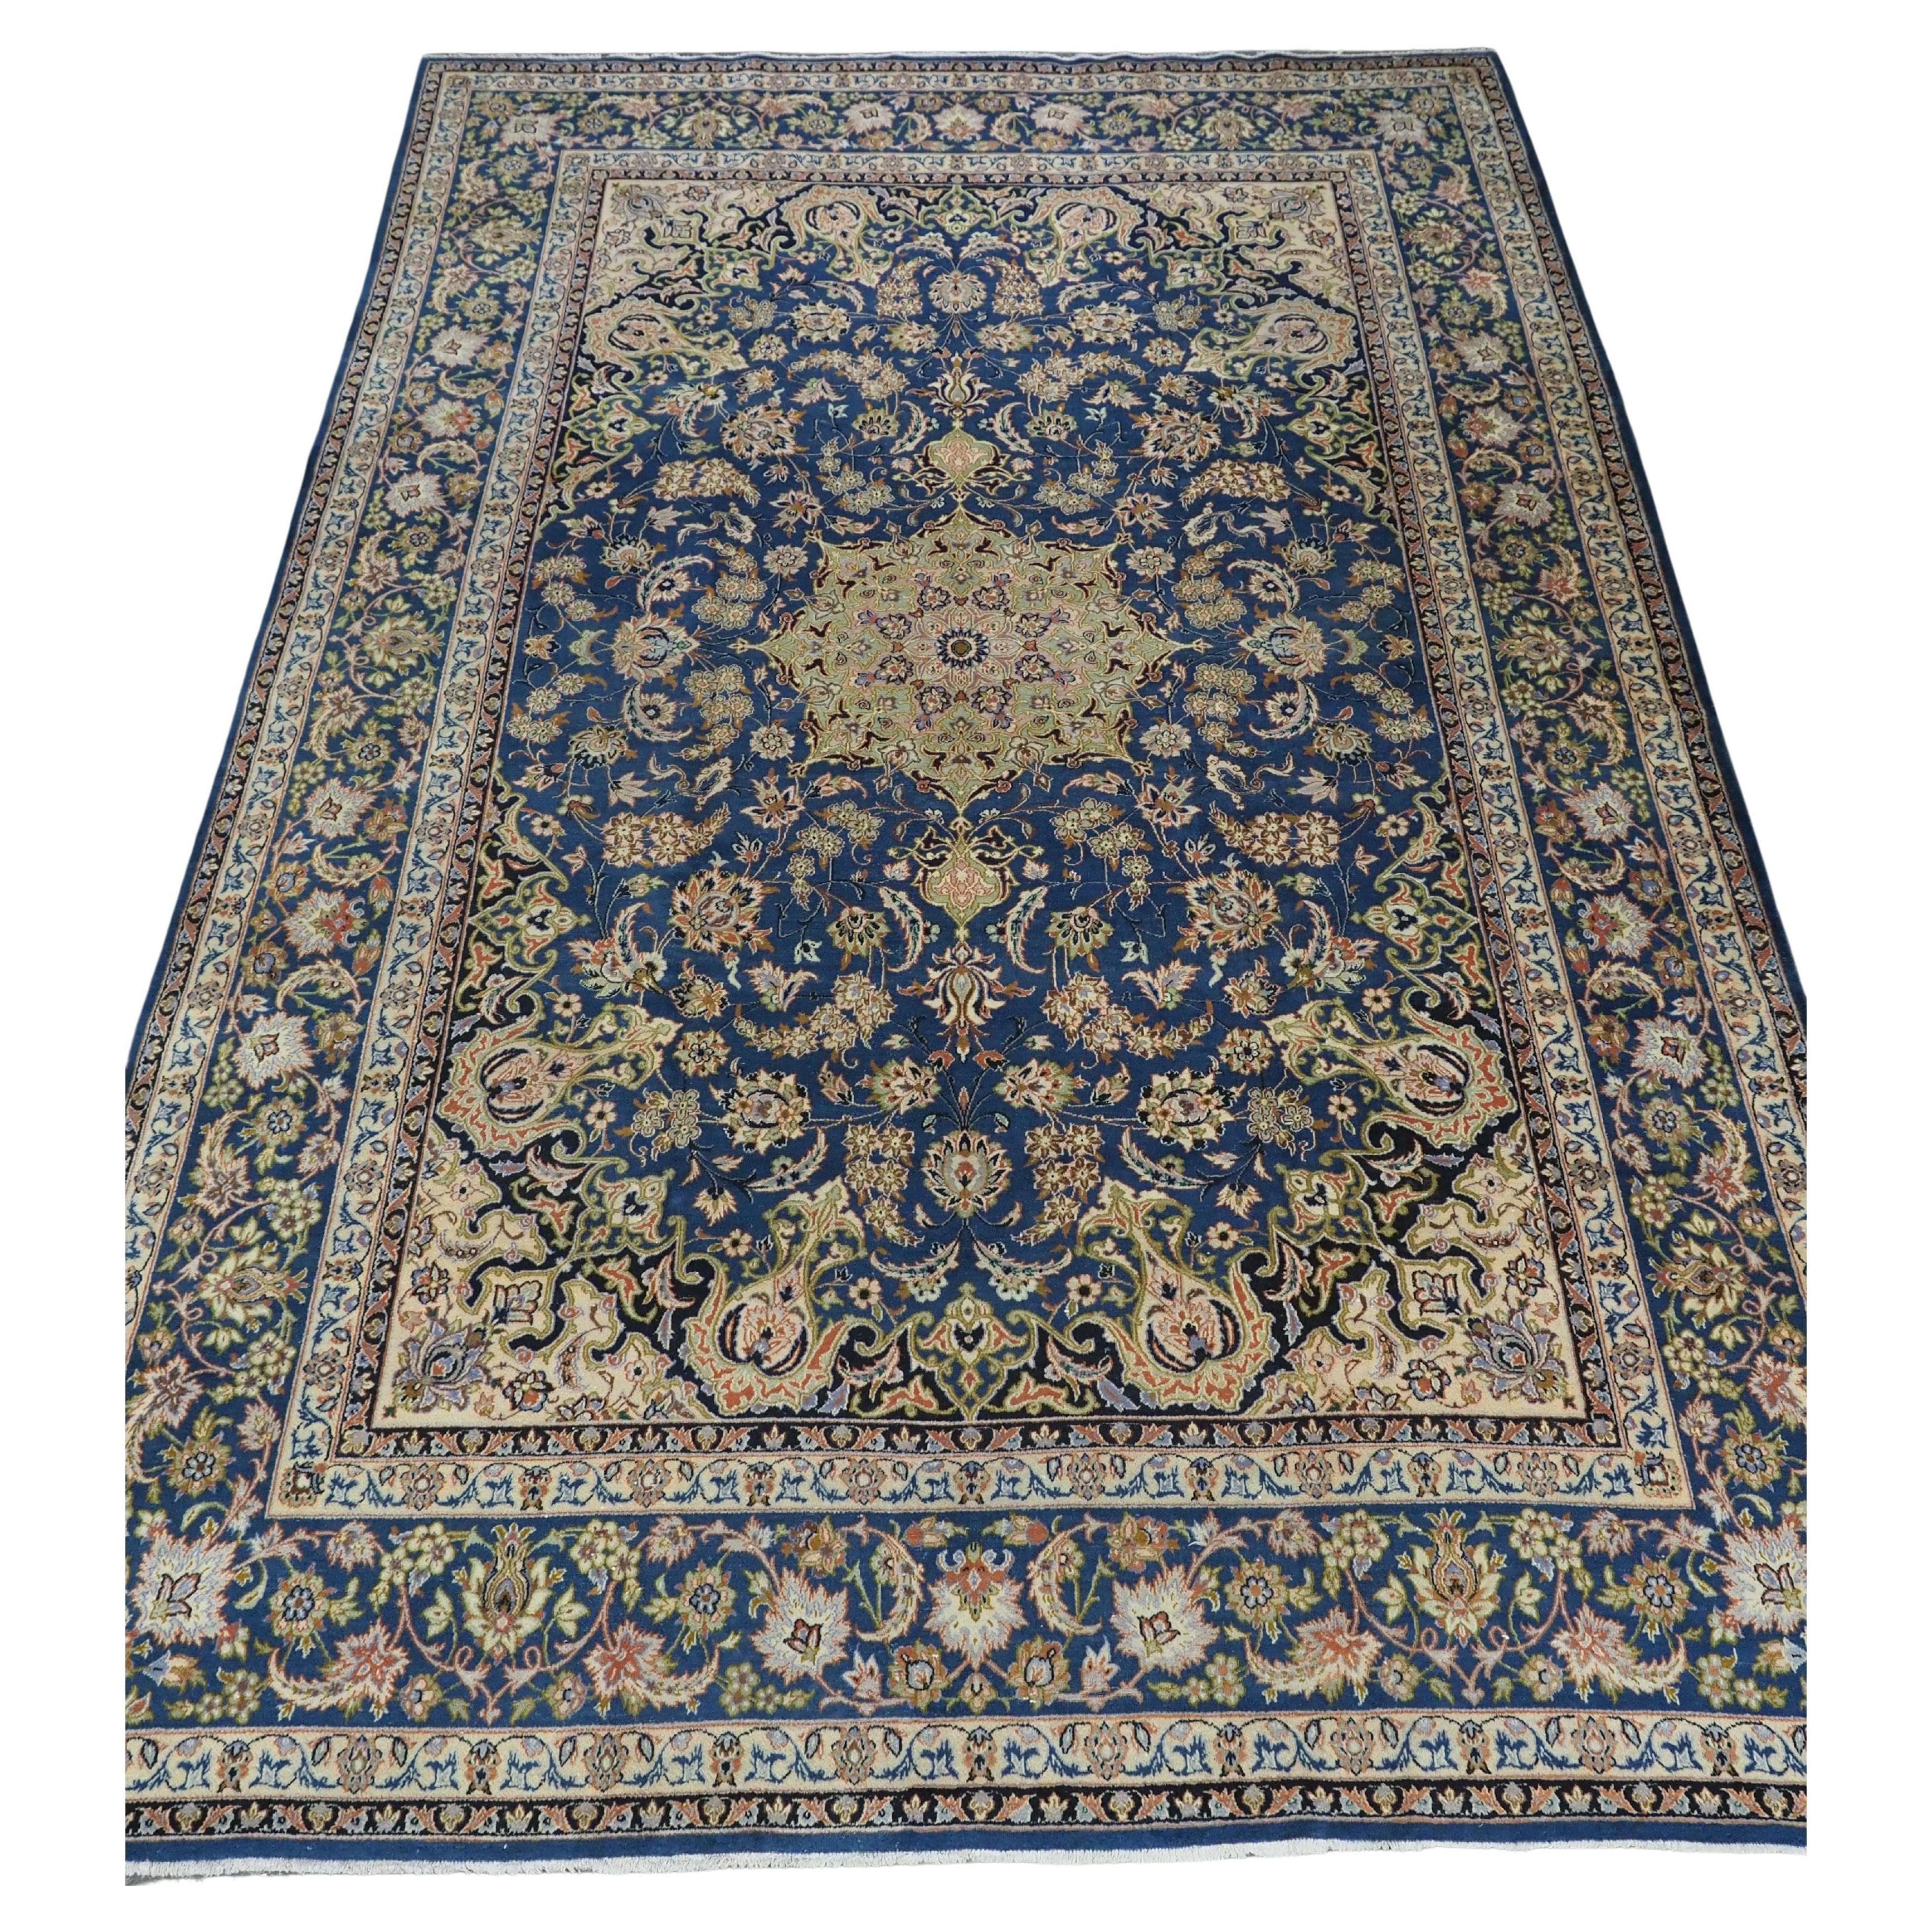 Vintage  Kashan carpet of traditional  design in a large room size.